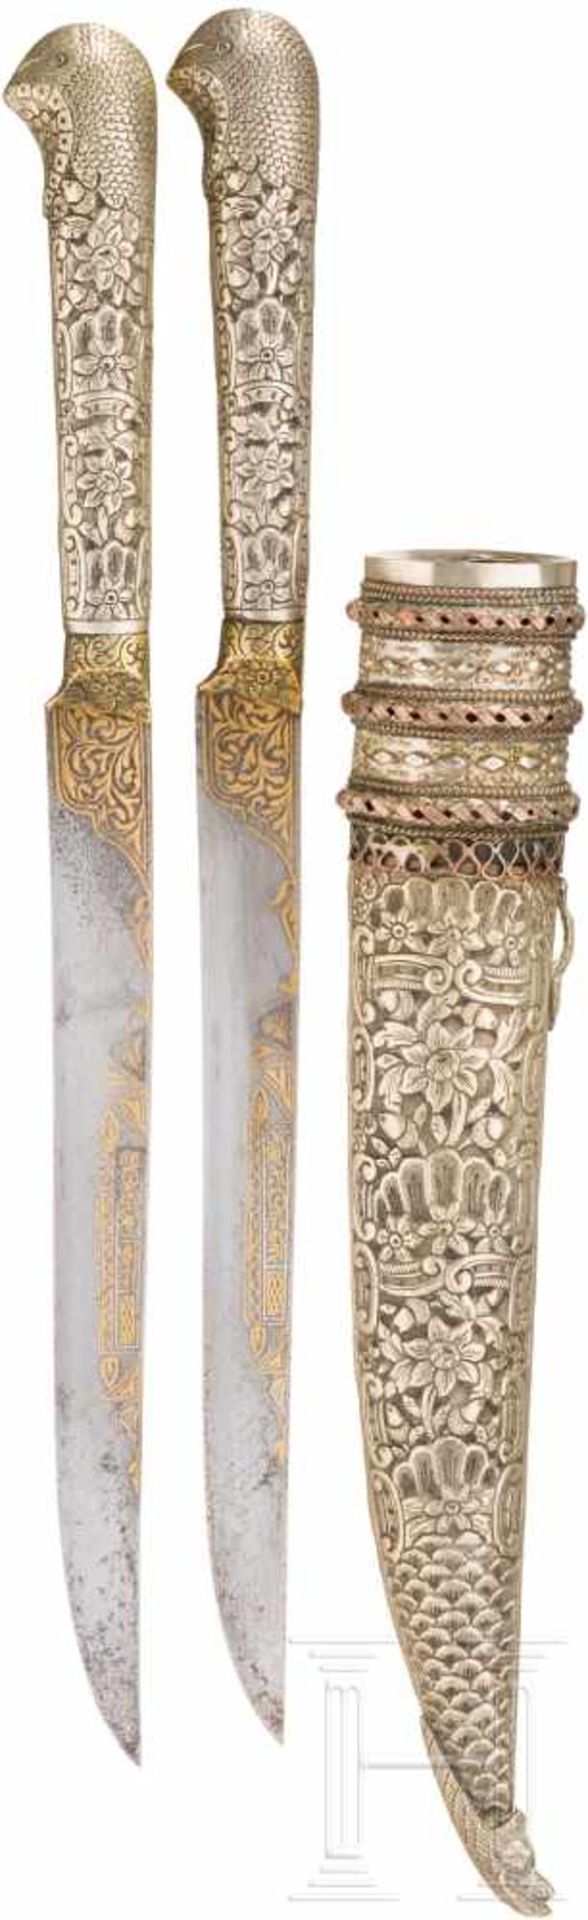 Goldtauschiertes Messerset, osmanisch, 19. Jhdt.Jeweils schmale Rückenklinge mit beidseitig floral